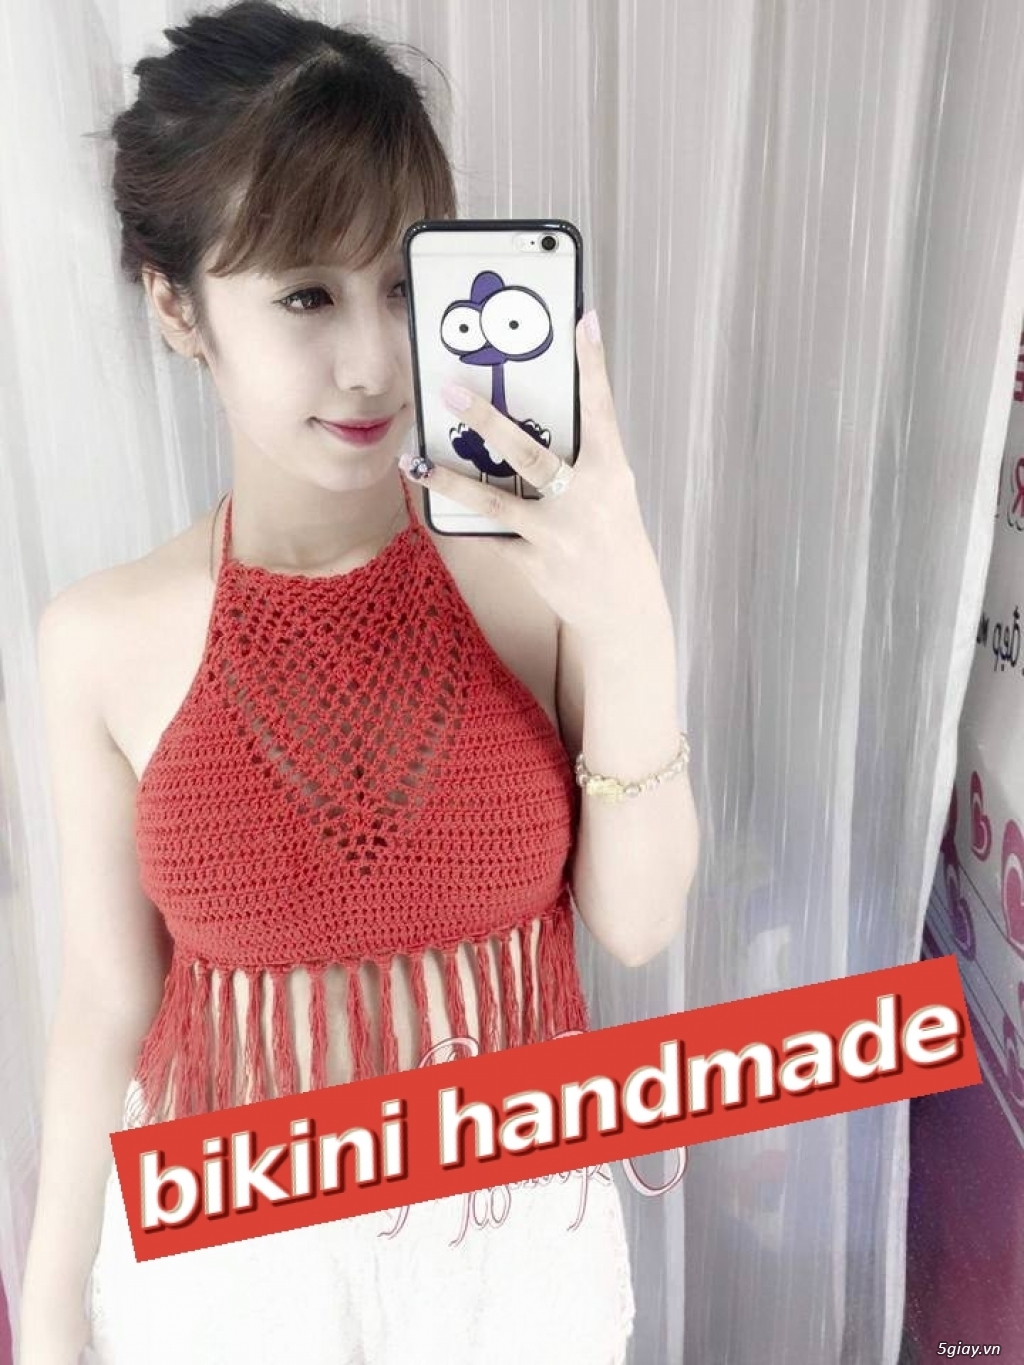 Xưởng chuyên sỉ lẻ bikini len móc handmade đẹp nhất Việt Nam - 1